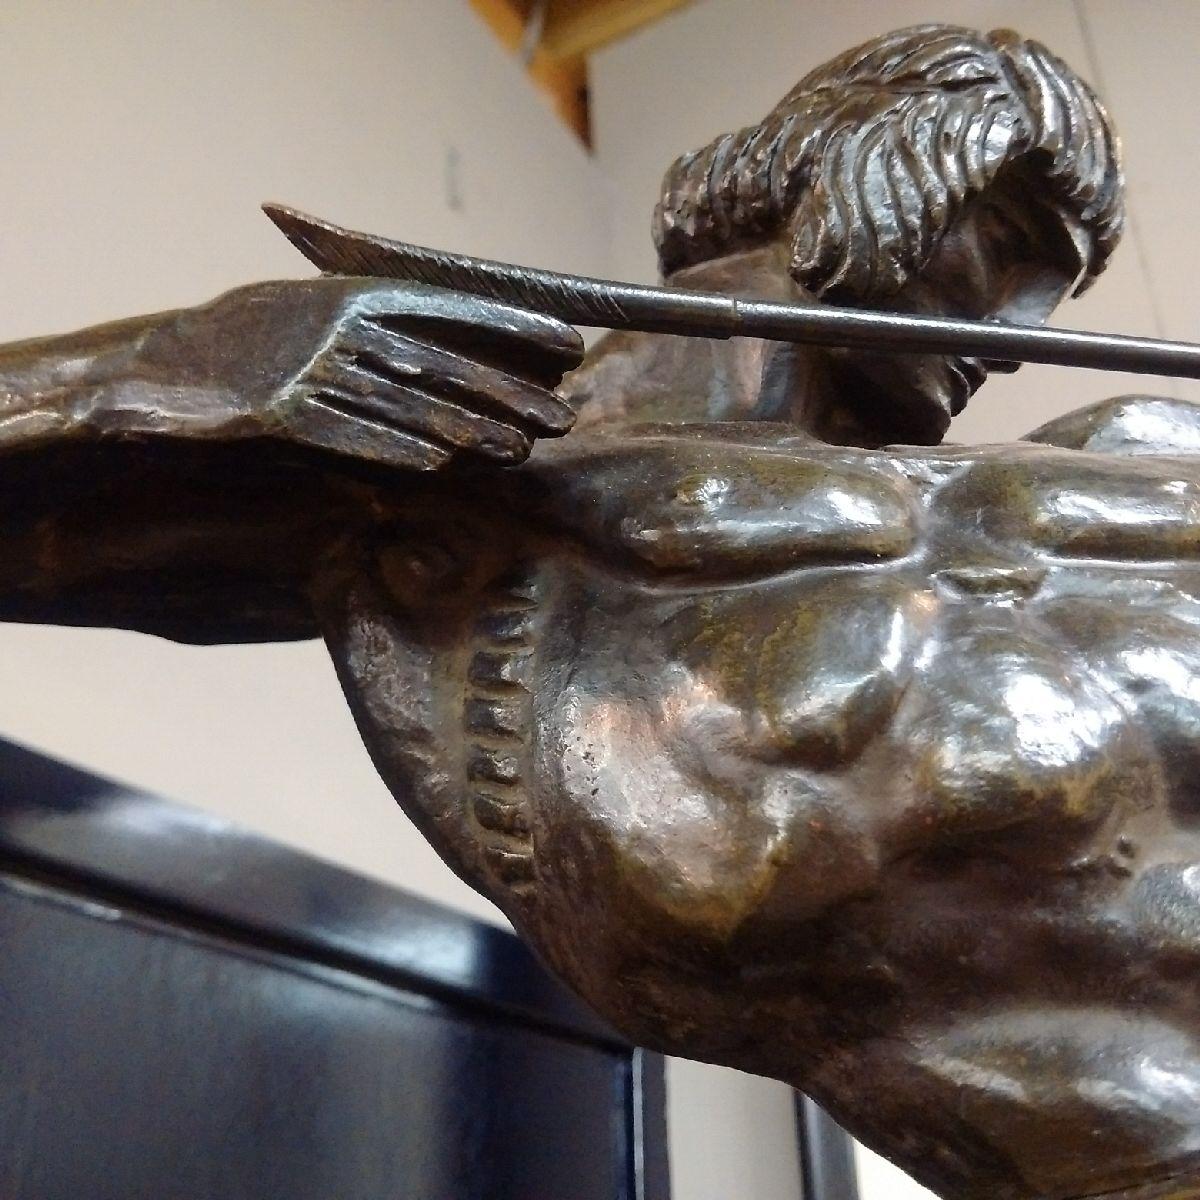 François Bazin (Français, 1890-1943) : monumentale et unique sculpture Art Déco en bronze d'un Centaure se cabrant, tirant sur son arc, montée sur un socle en marbre vert, le bronze est signé et marqué dans le bronze 'PIÈCE UNIQUE 1924'.

Note :